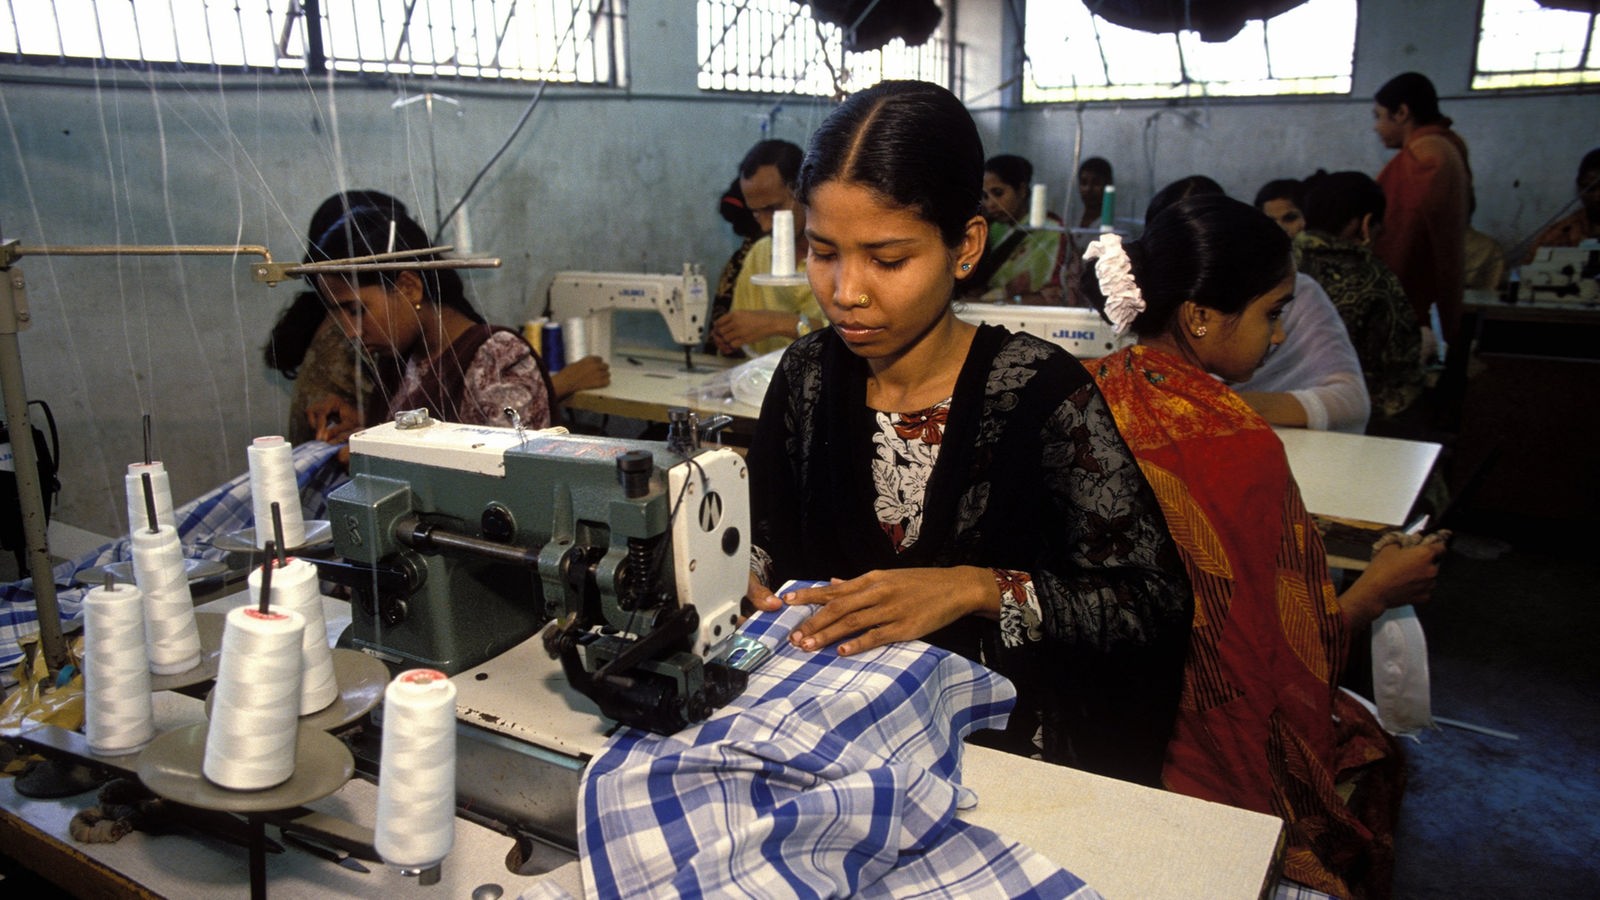 Näherinnen in einer Fabrik in Bangladesch